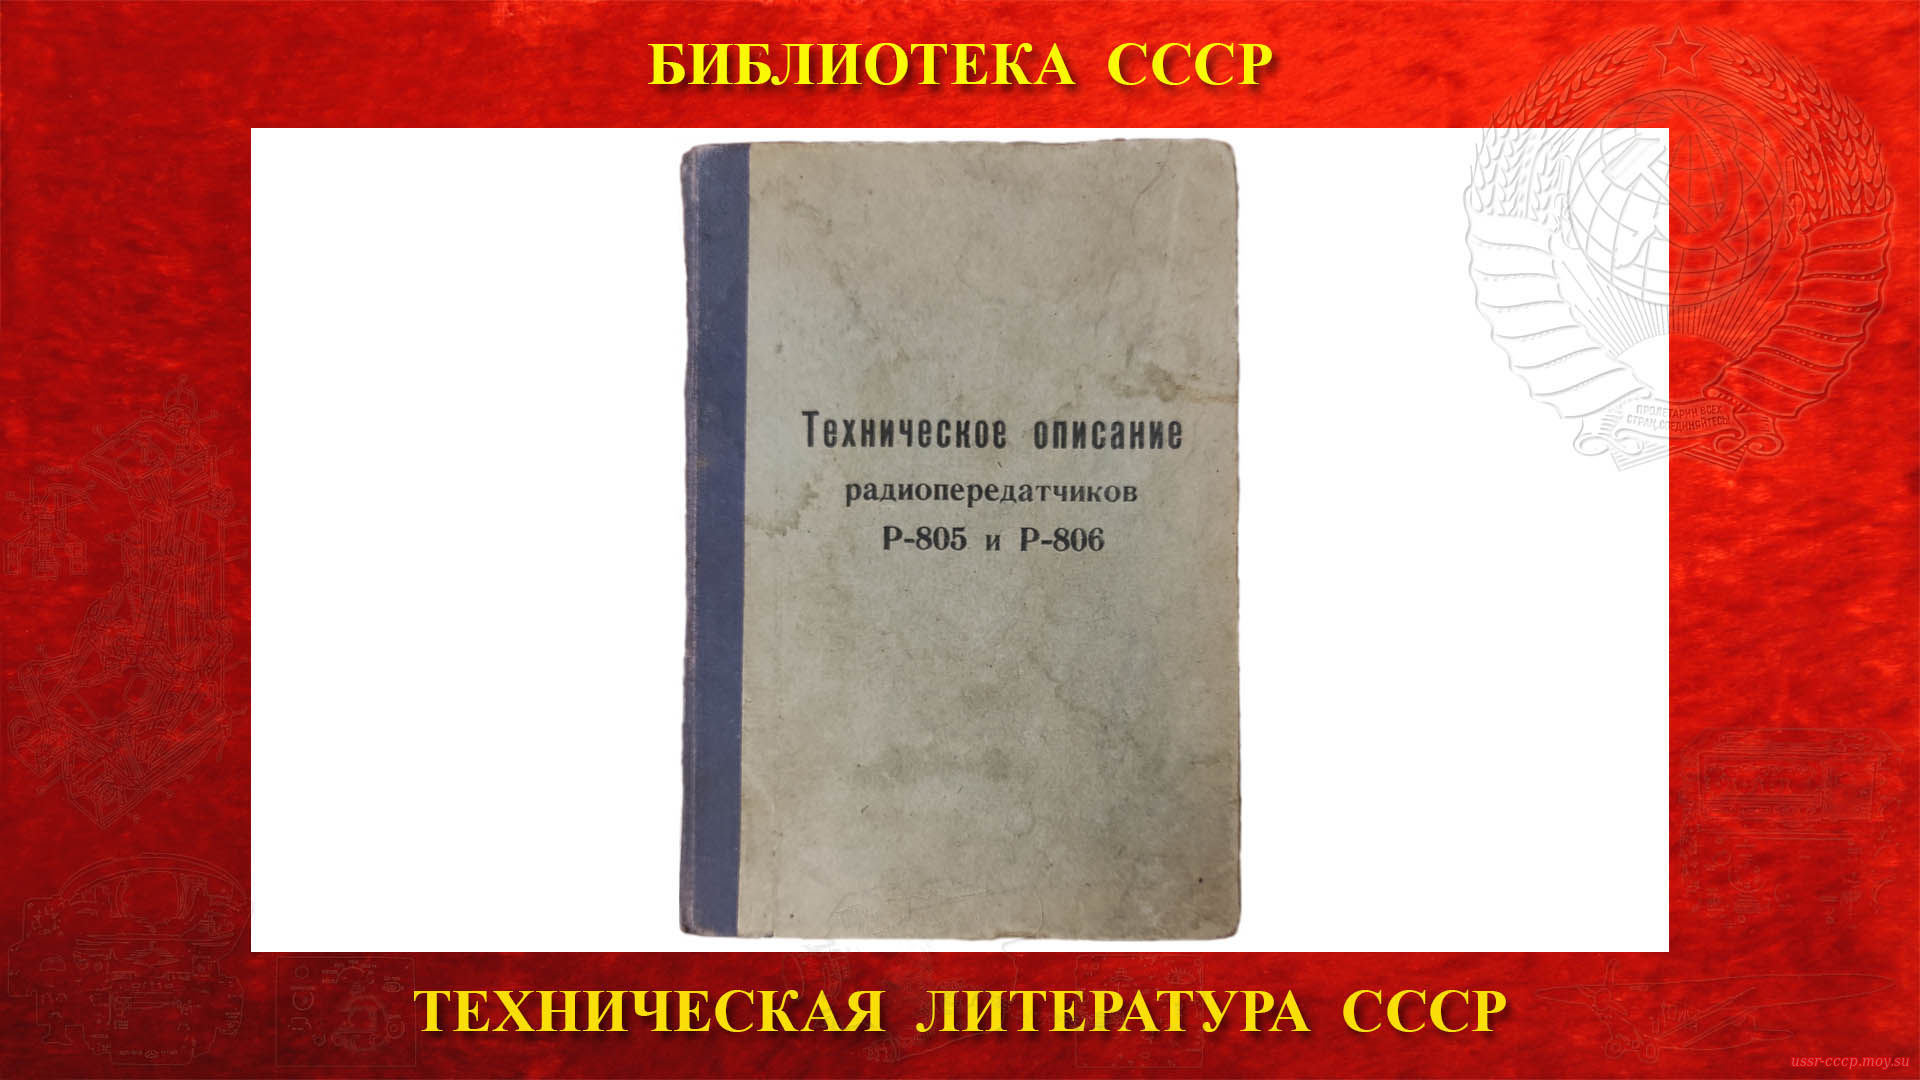 Техническое описание радиопередатчиков Р-805 и Р-806 — Библиотека СССР